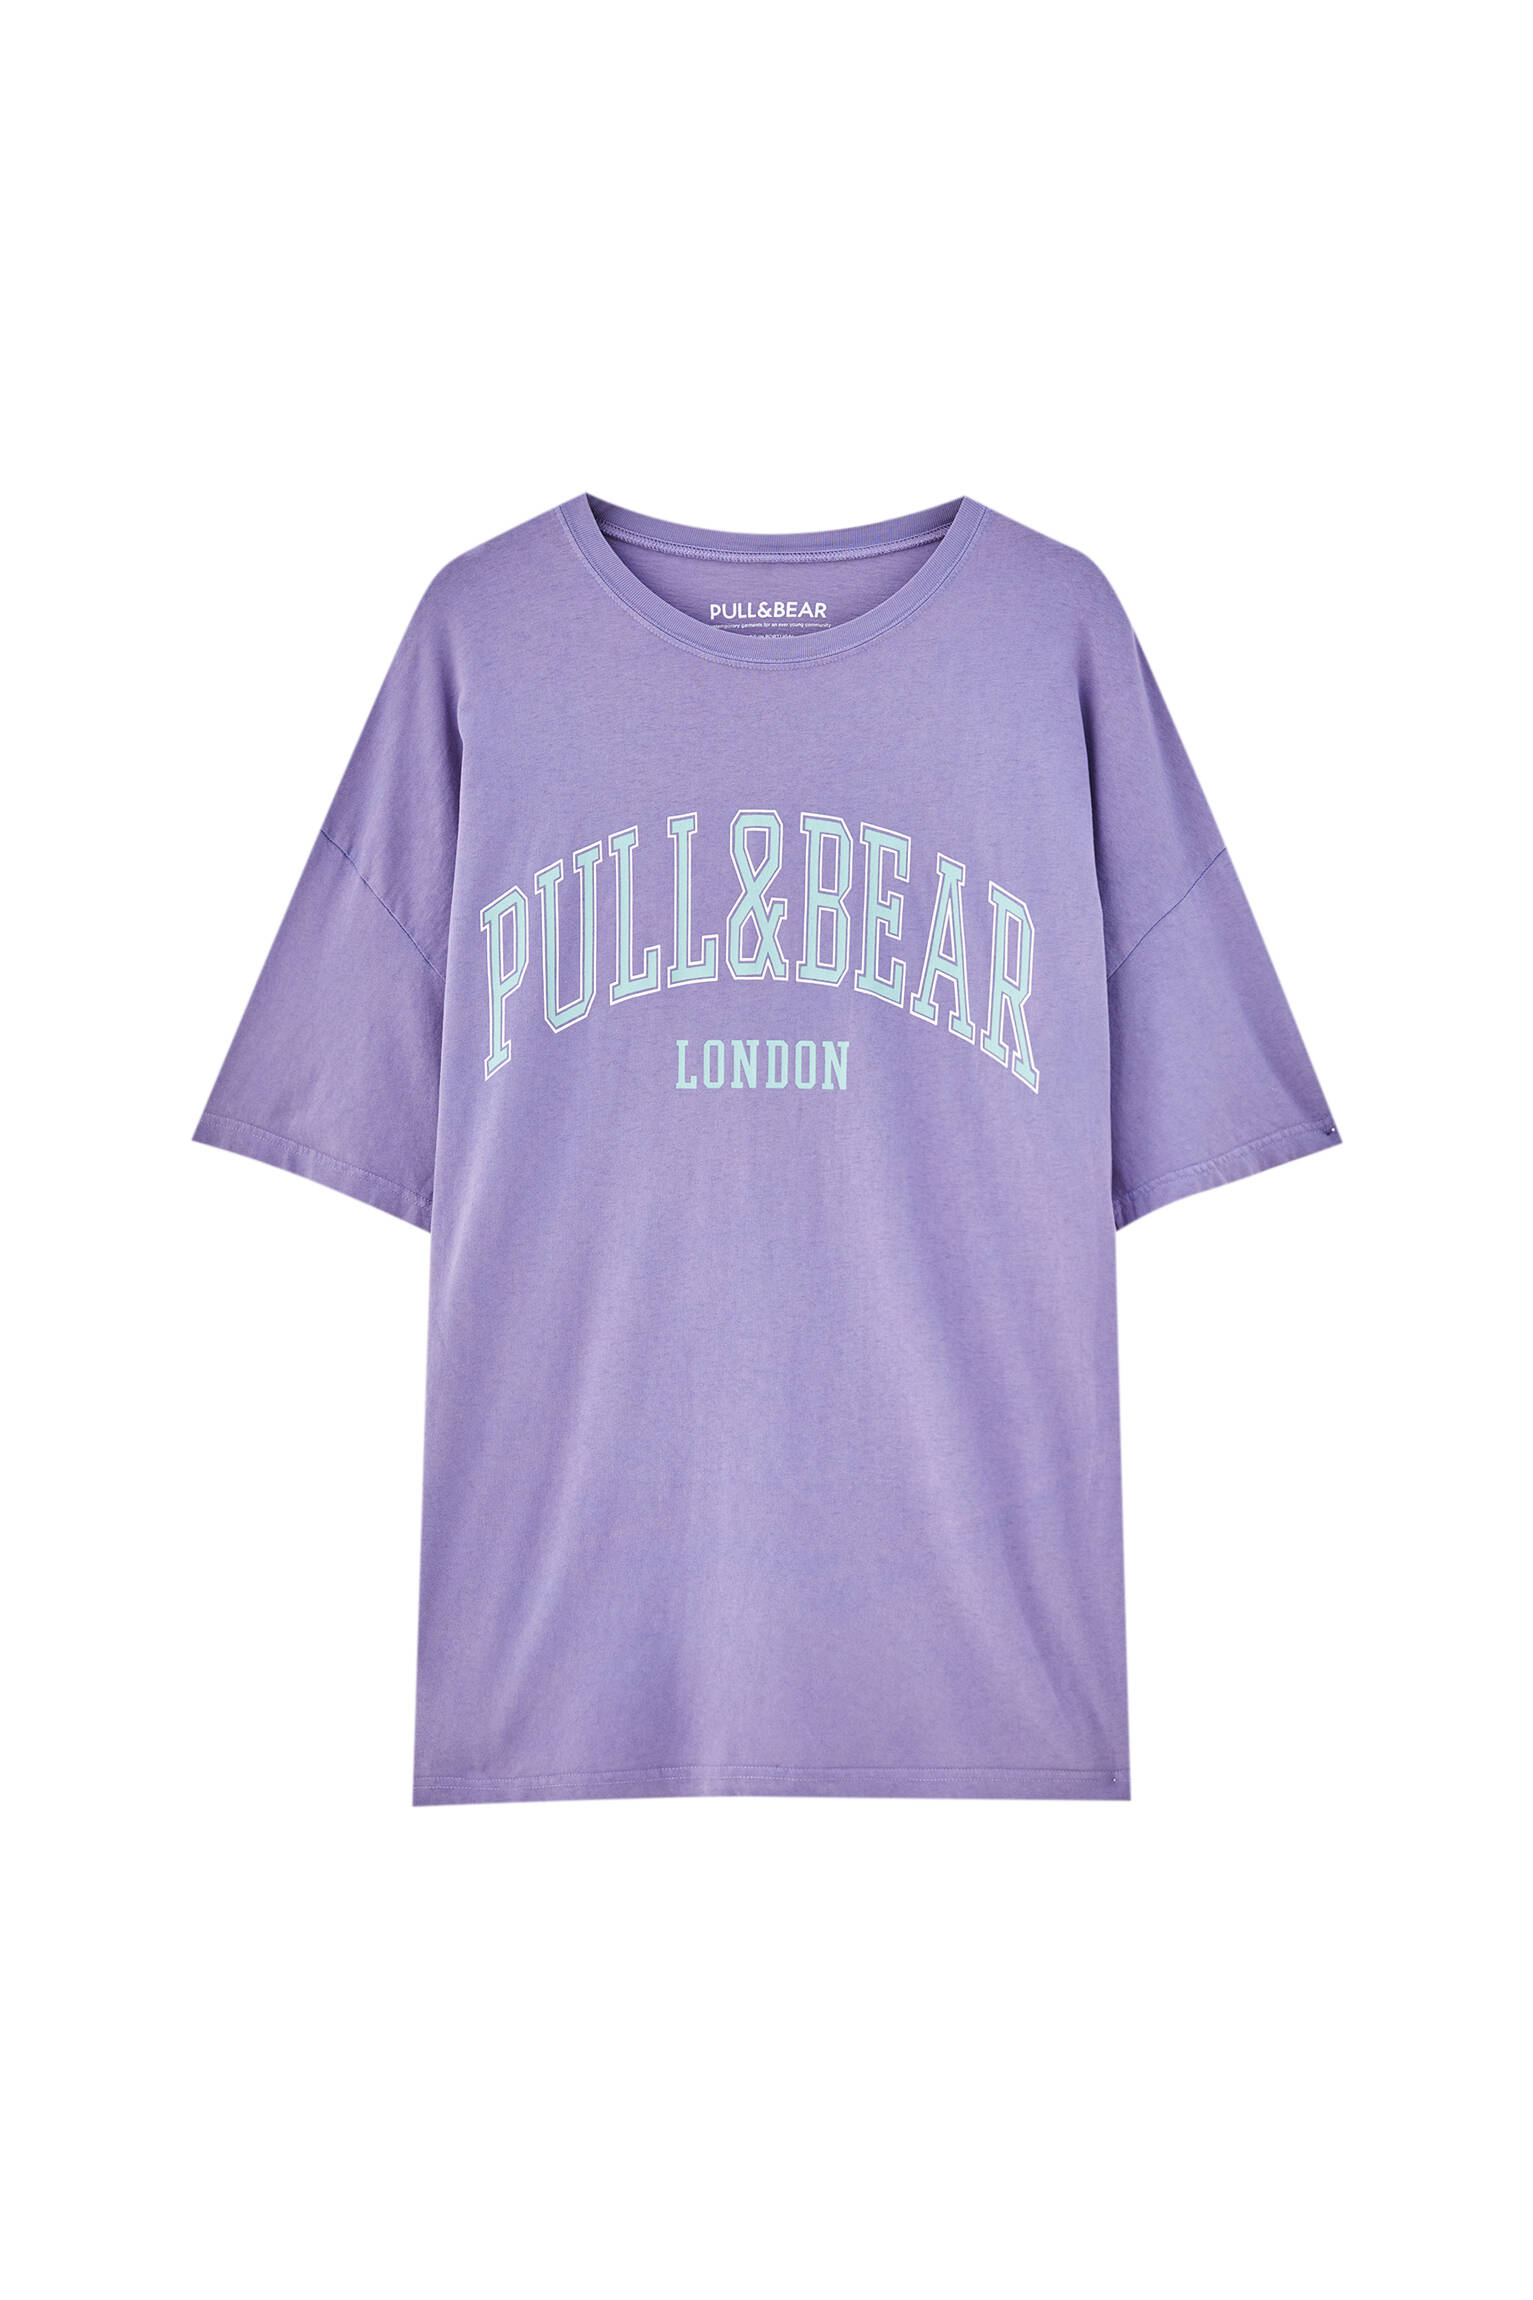 Pull&bear Homme T-shirt En Coton à Manches Courtes Et Col Rond, Avec Logo Pull&bear Contrastant. Violet L